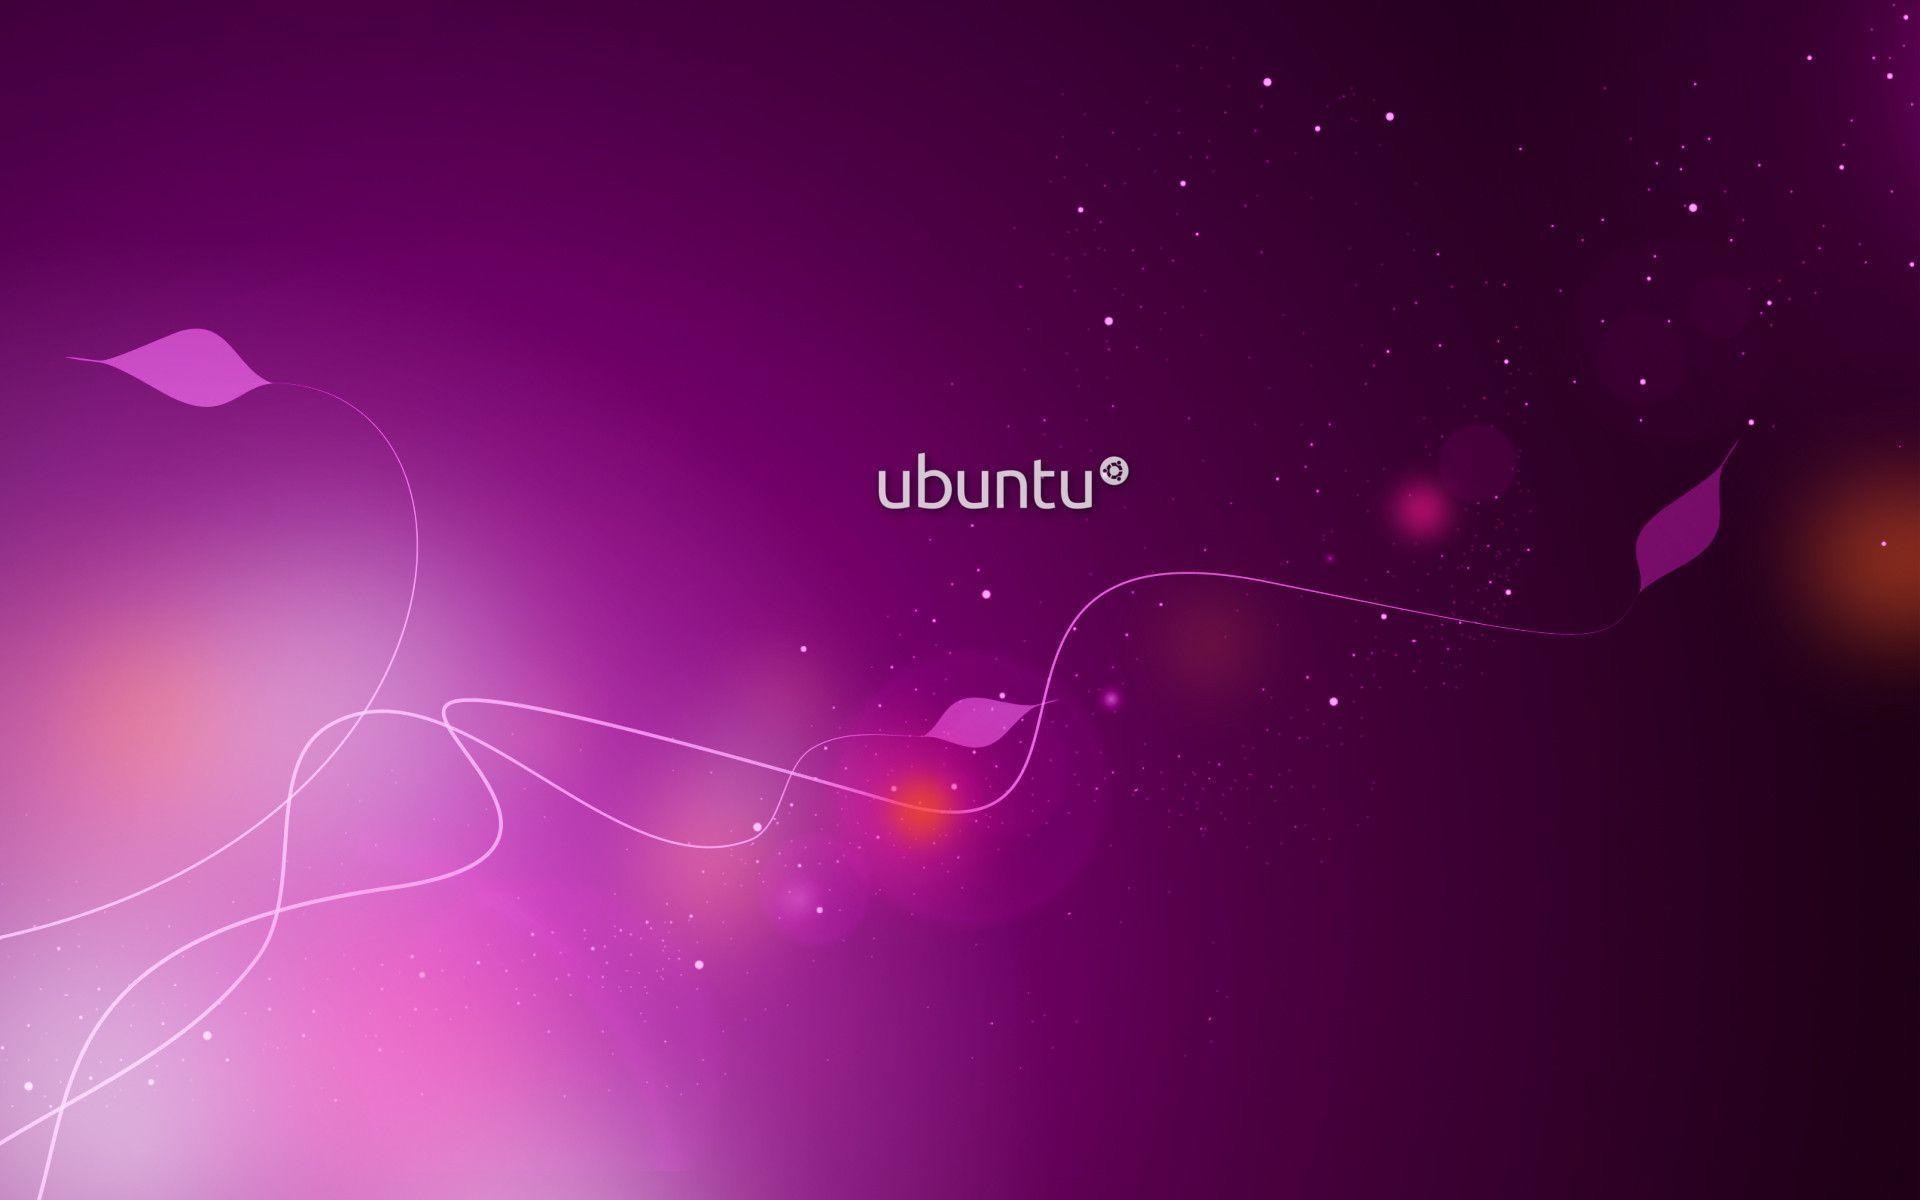 Ubuntu desktop backgrounds là tuyệt phẩm nghệ thuật sáng tạo, mang đến cái nhìn mới mẻ cho máy tính của bạn. Hãy khám phá sự đơn giản và thú vị của những bức ảnh nền Ubuntu desktop backgrounds để trang trí cho máy tính của bạn.